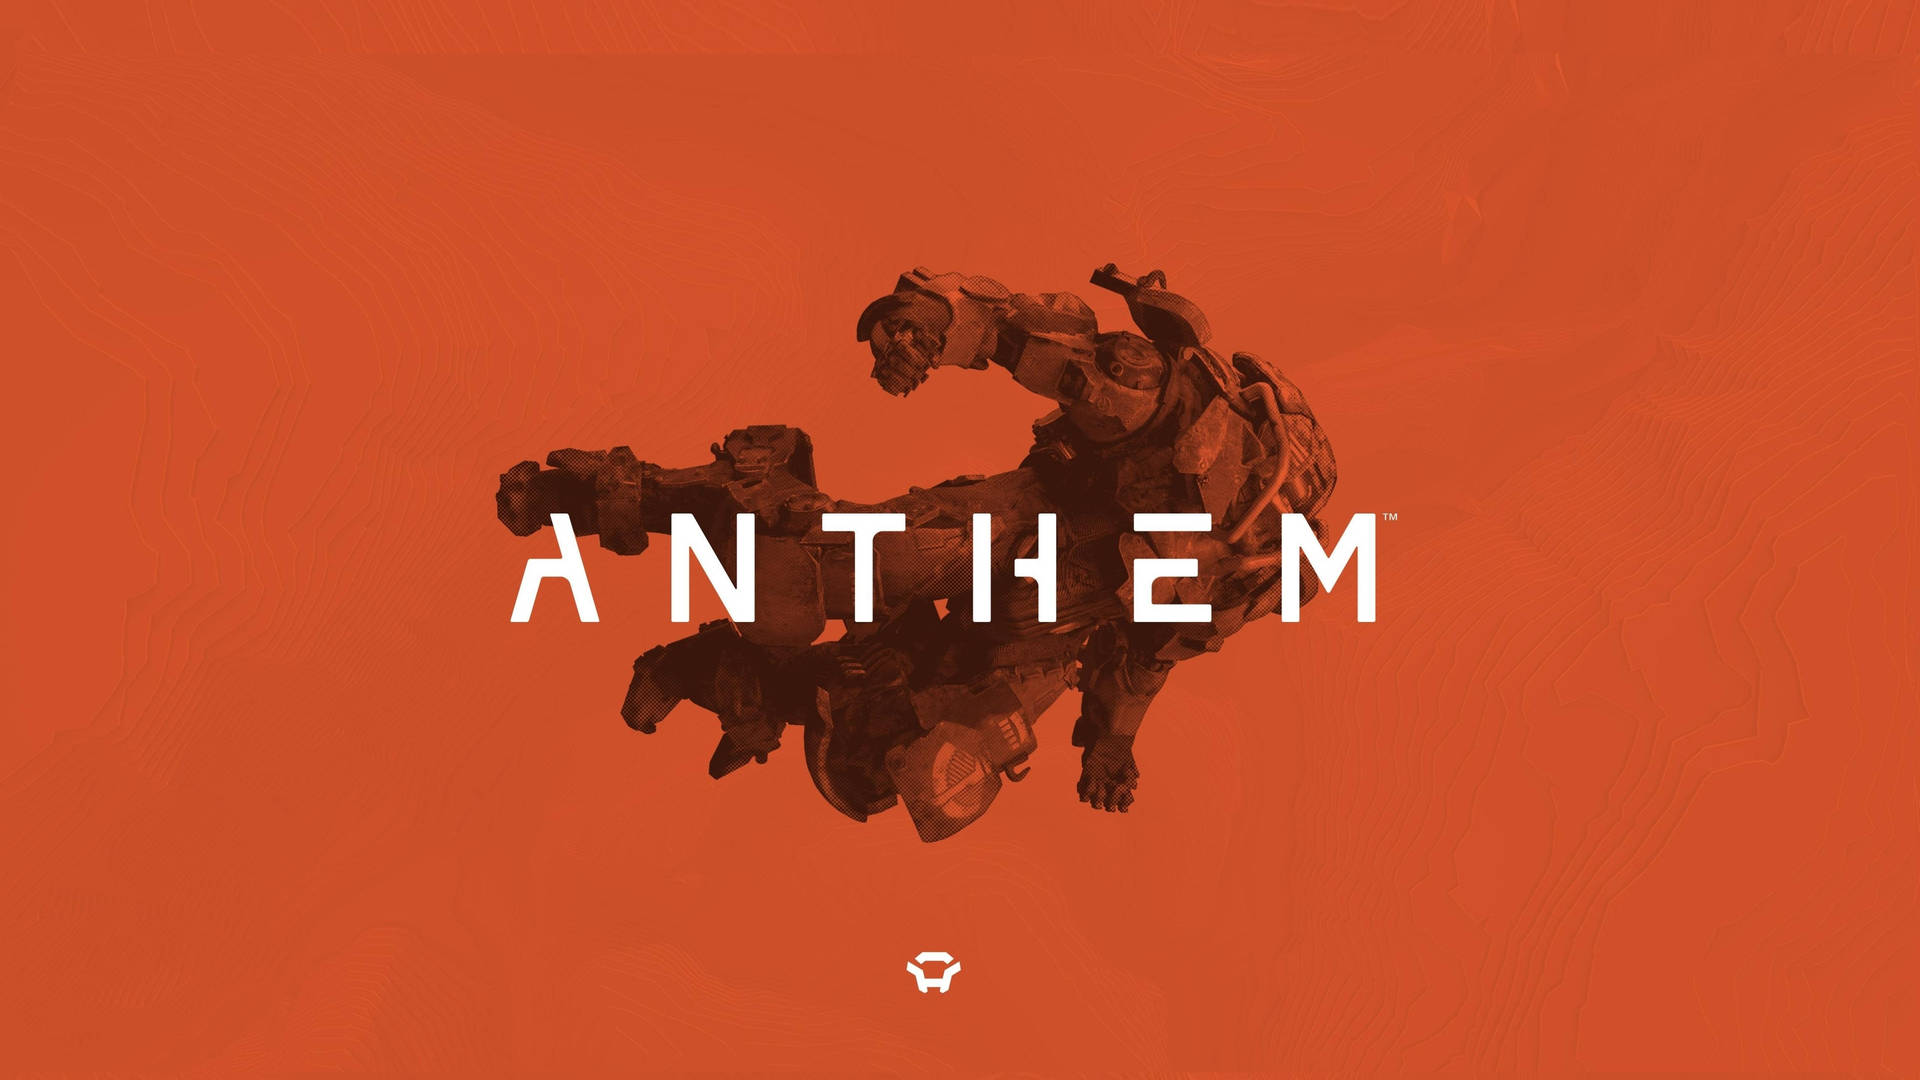 Aimagem Anthem, Um Papel De Parede De Vídeo-game Em 4k De Alta Definição, Apresenta Uma Paisagem De Campos Gramíneos Abaixo De Um Céu Estrelado Da Aurora Boreal. Papel de Parede